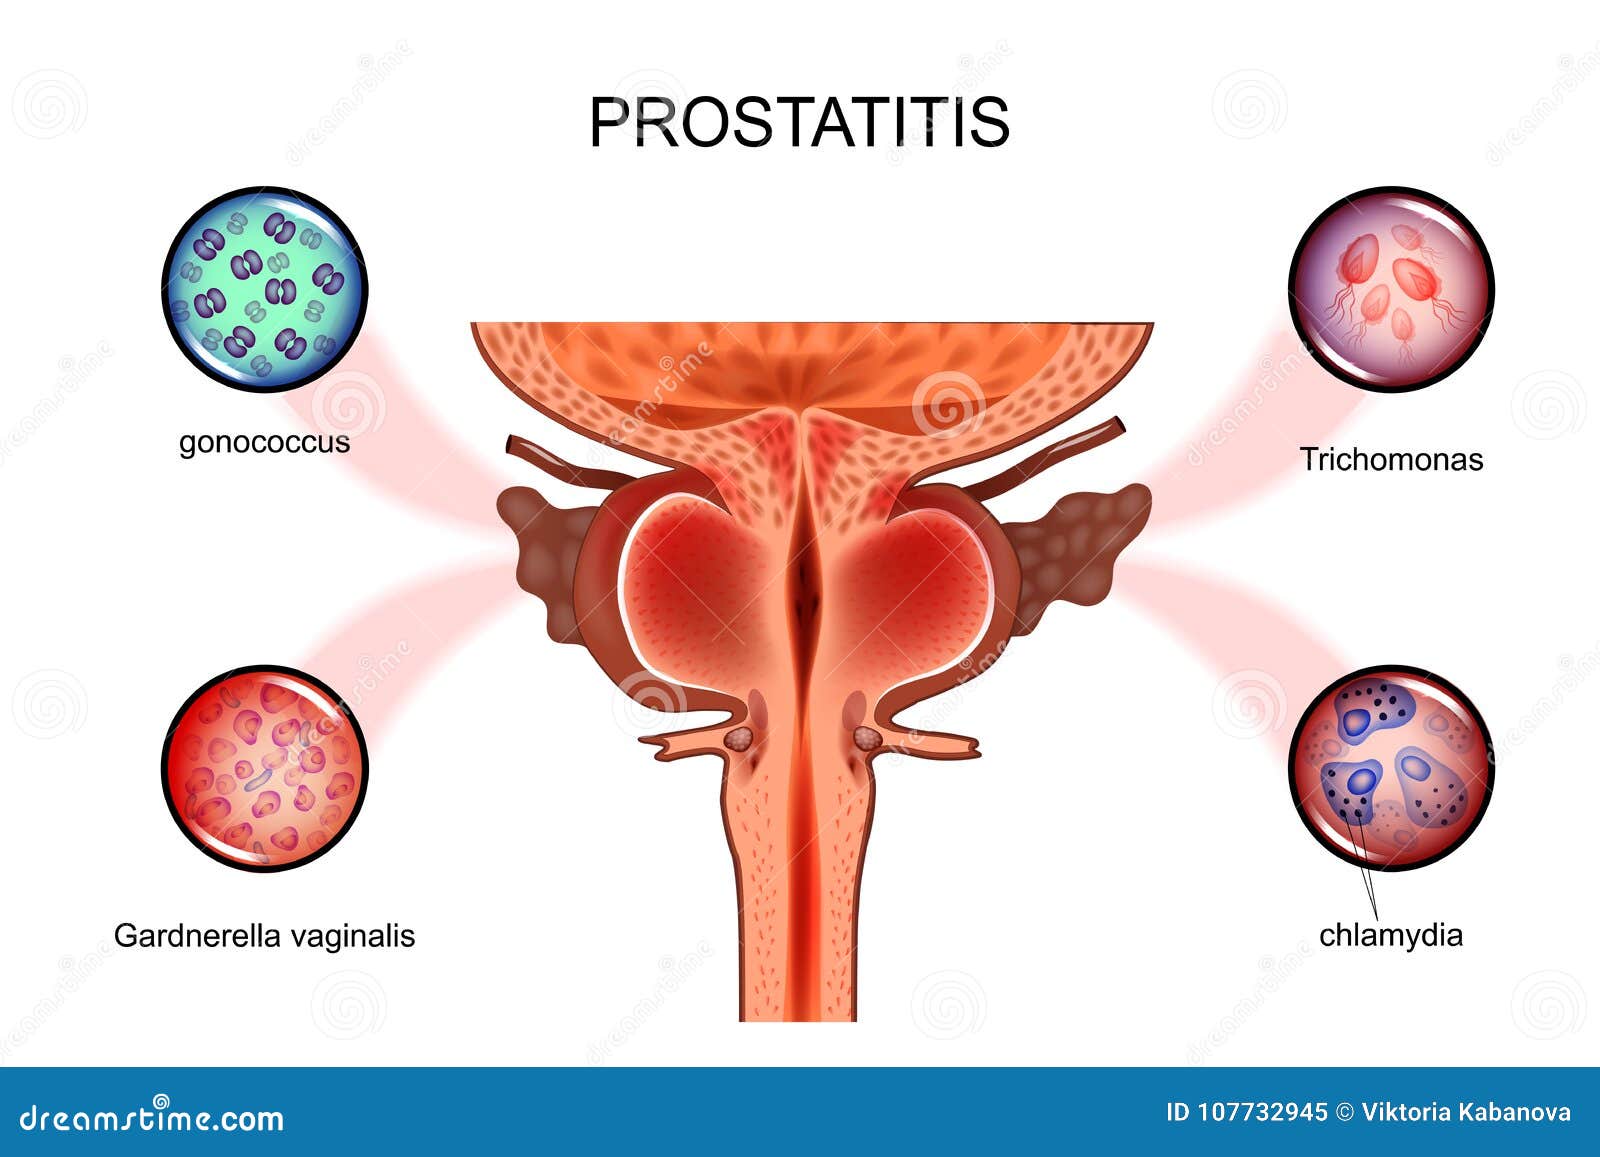 prostatis- tól segíts nekem gomba a prosztatitis kezelésére